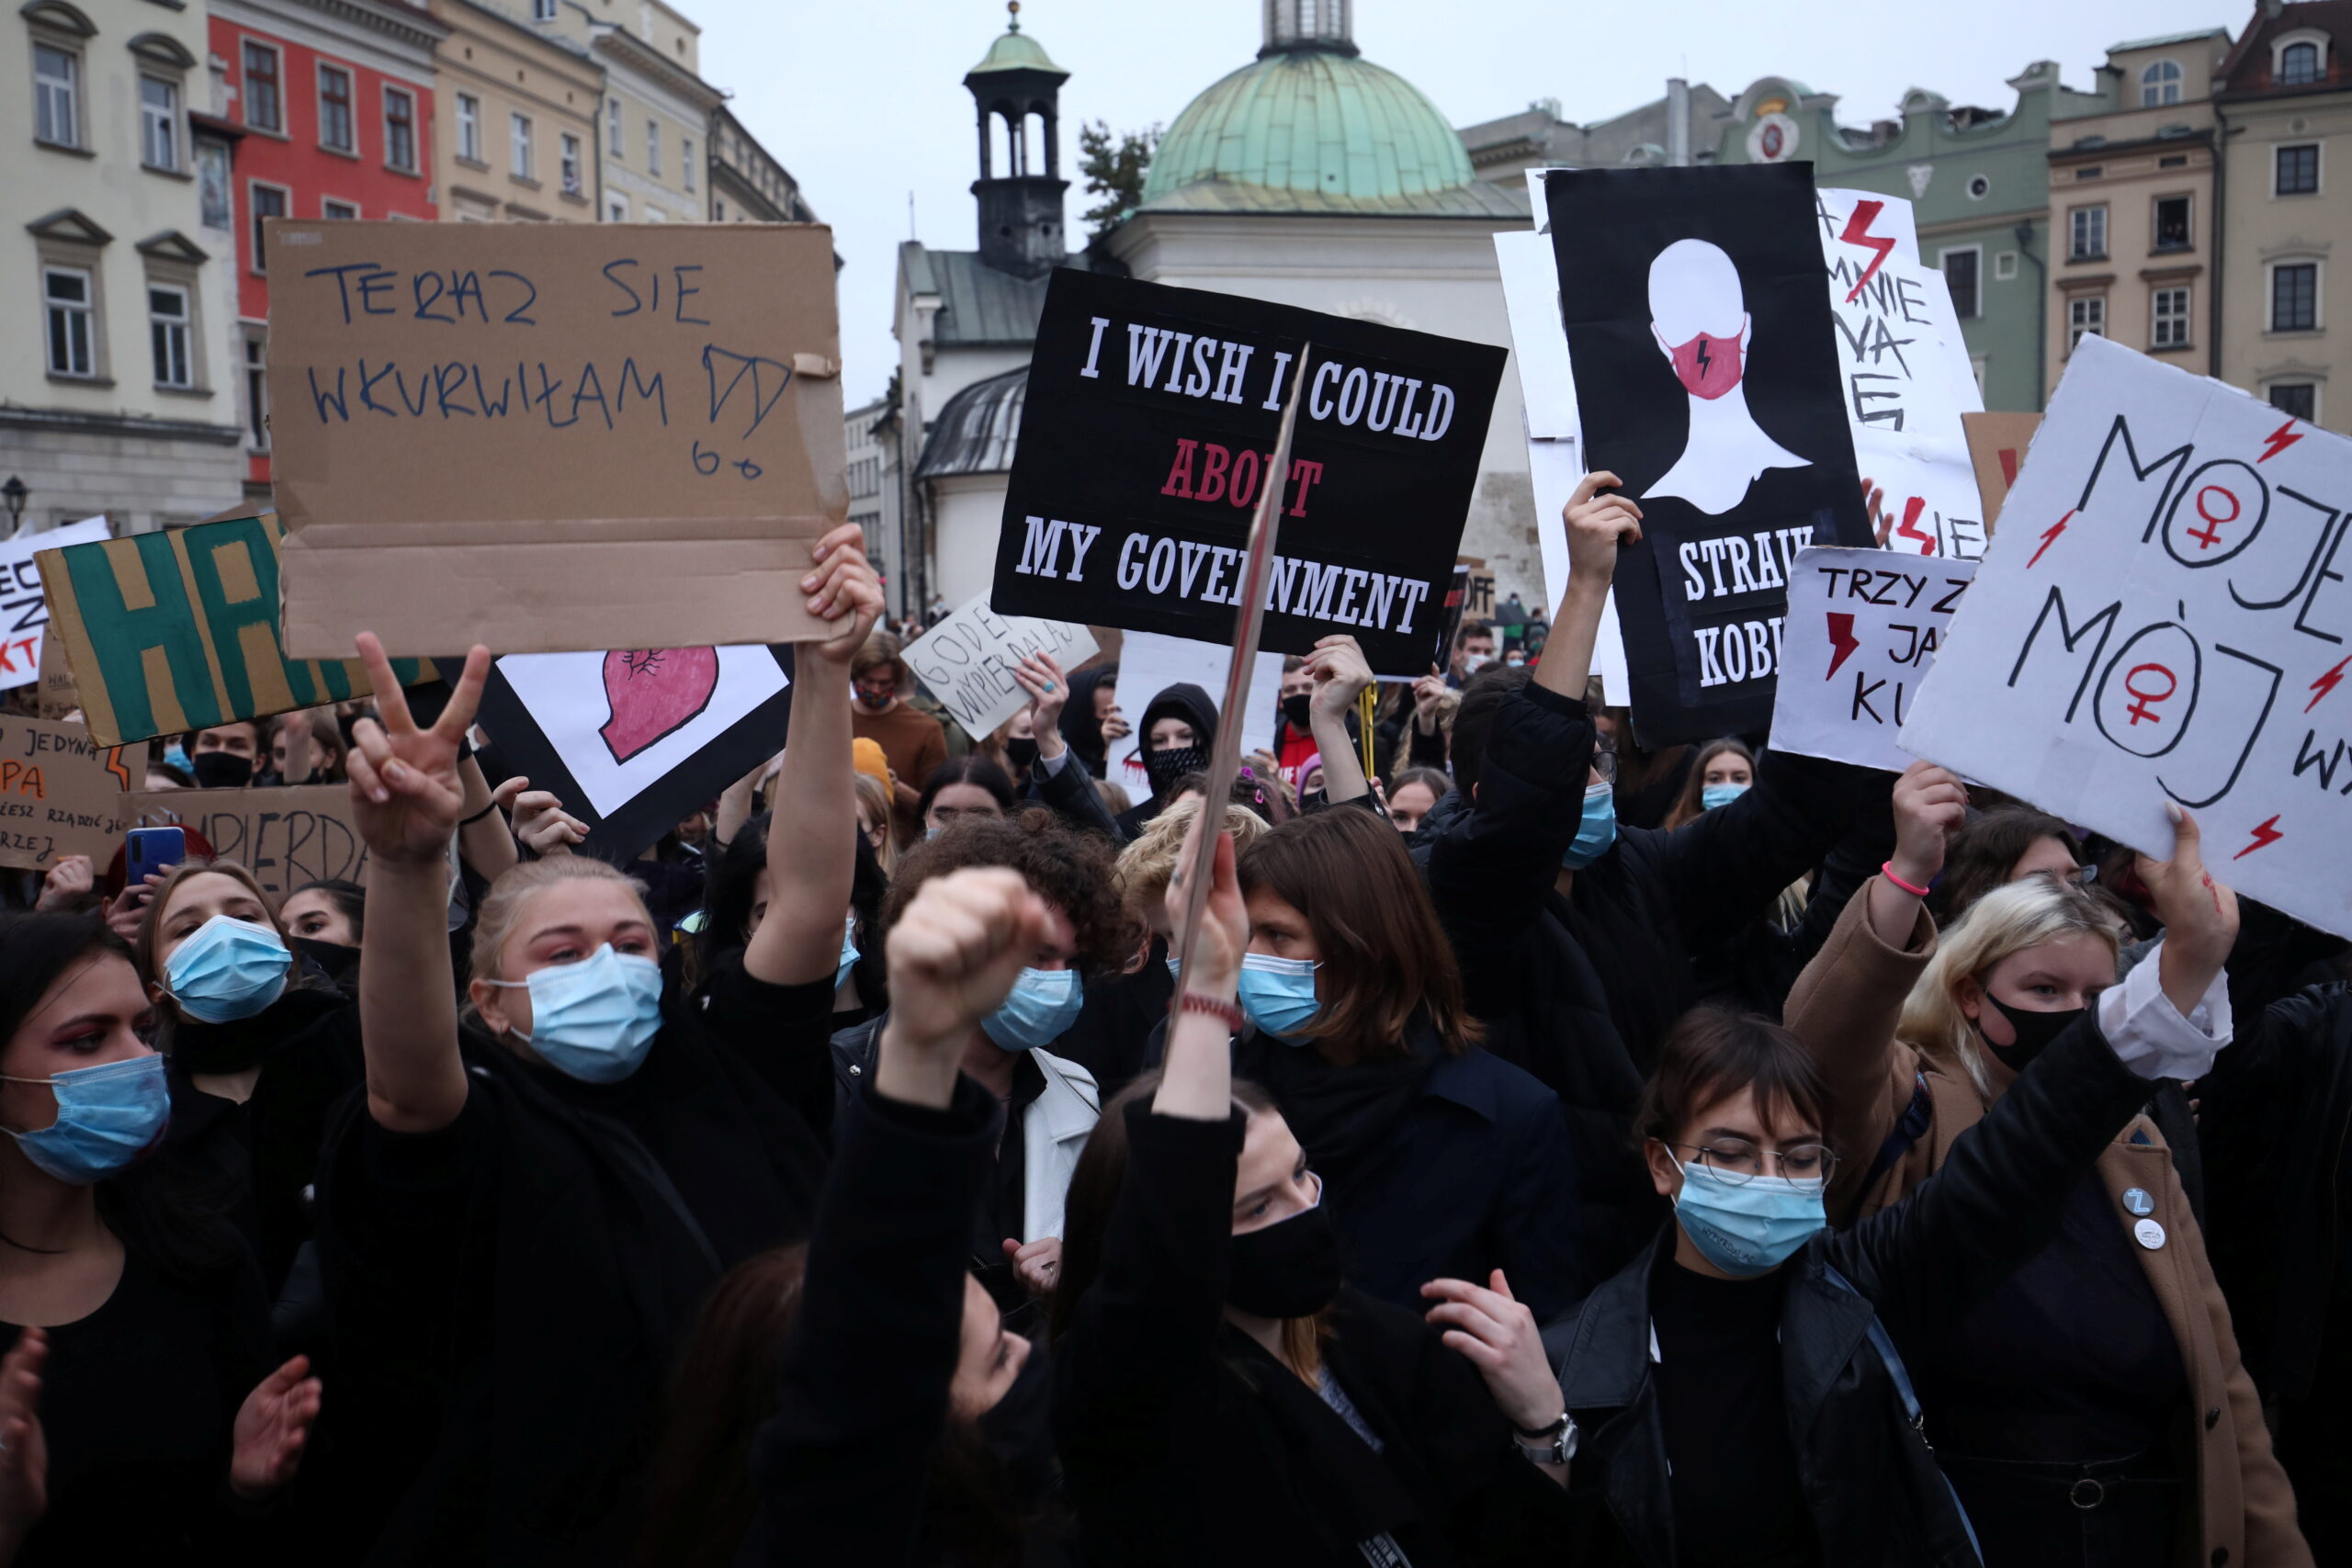 Polonia: proteste contro le restrizioni sull'aborto